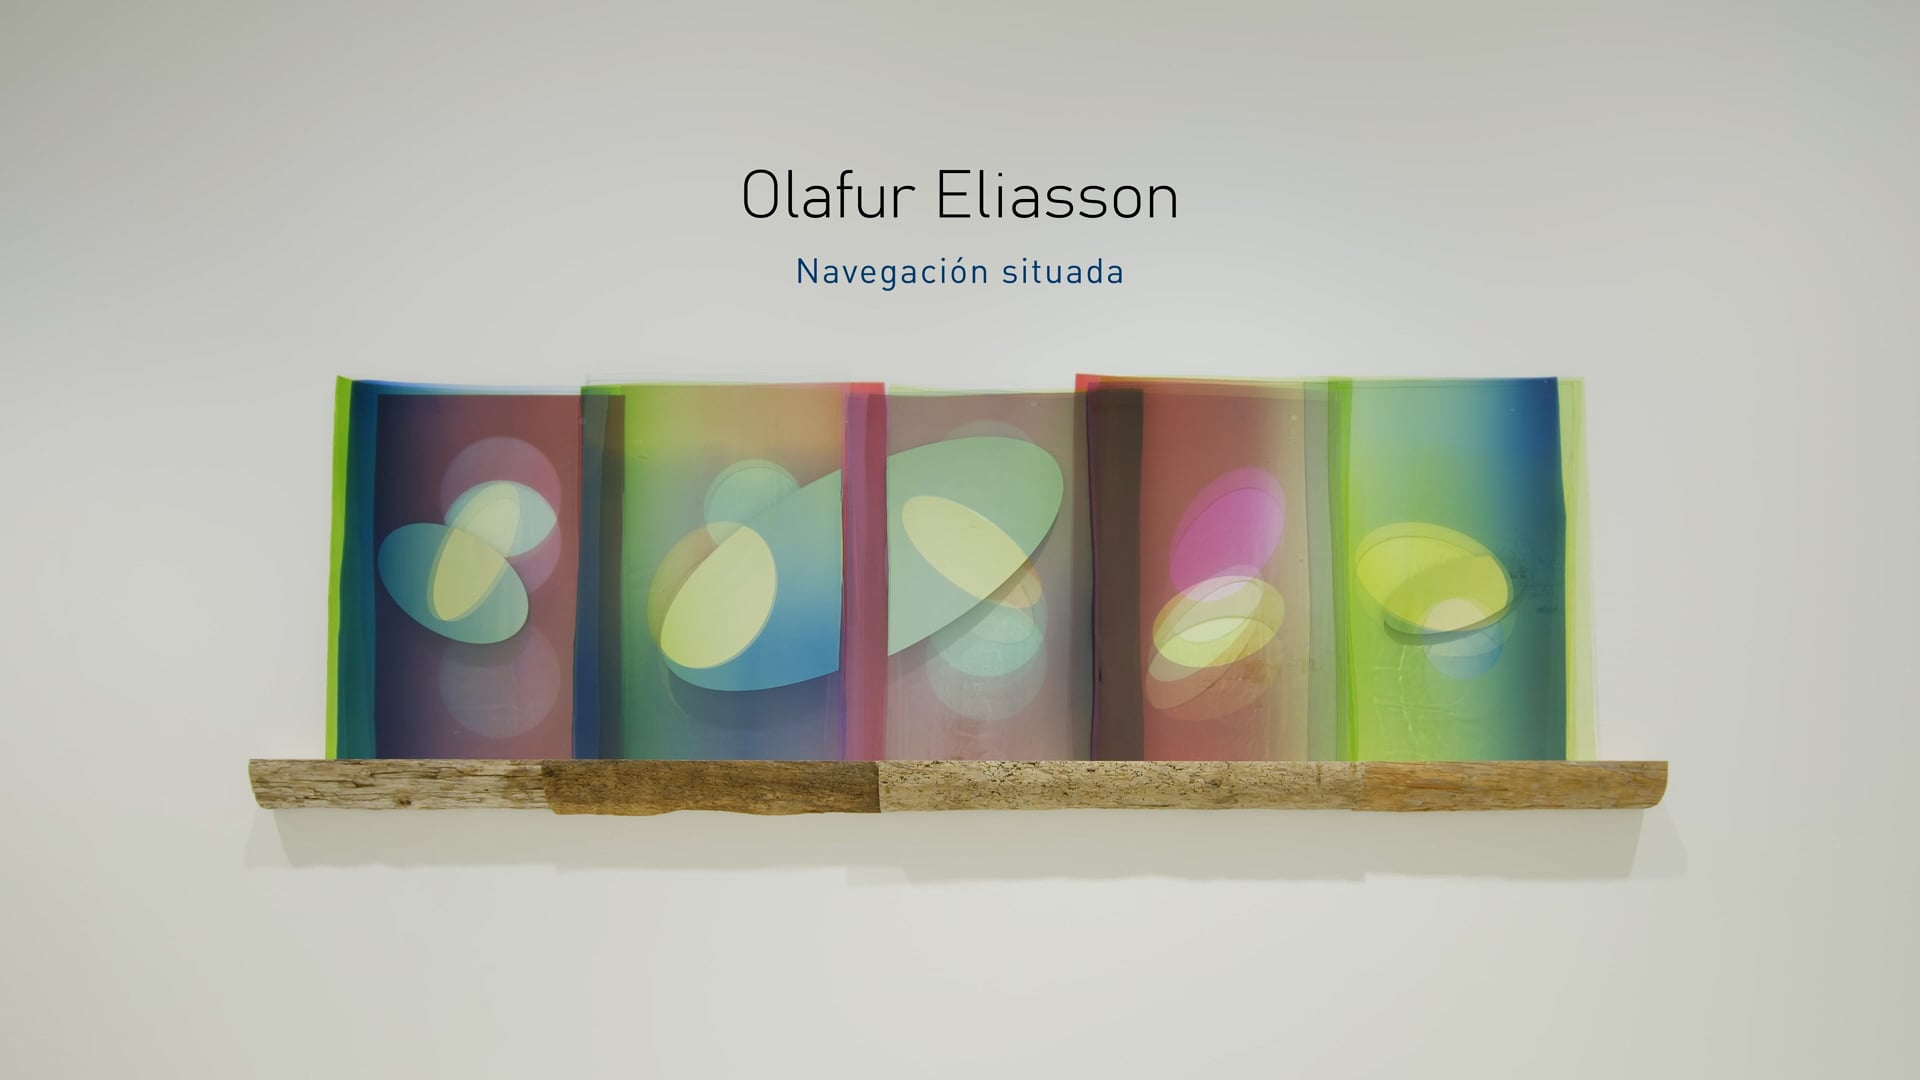 Olafur Eliasson - Navegación situada